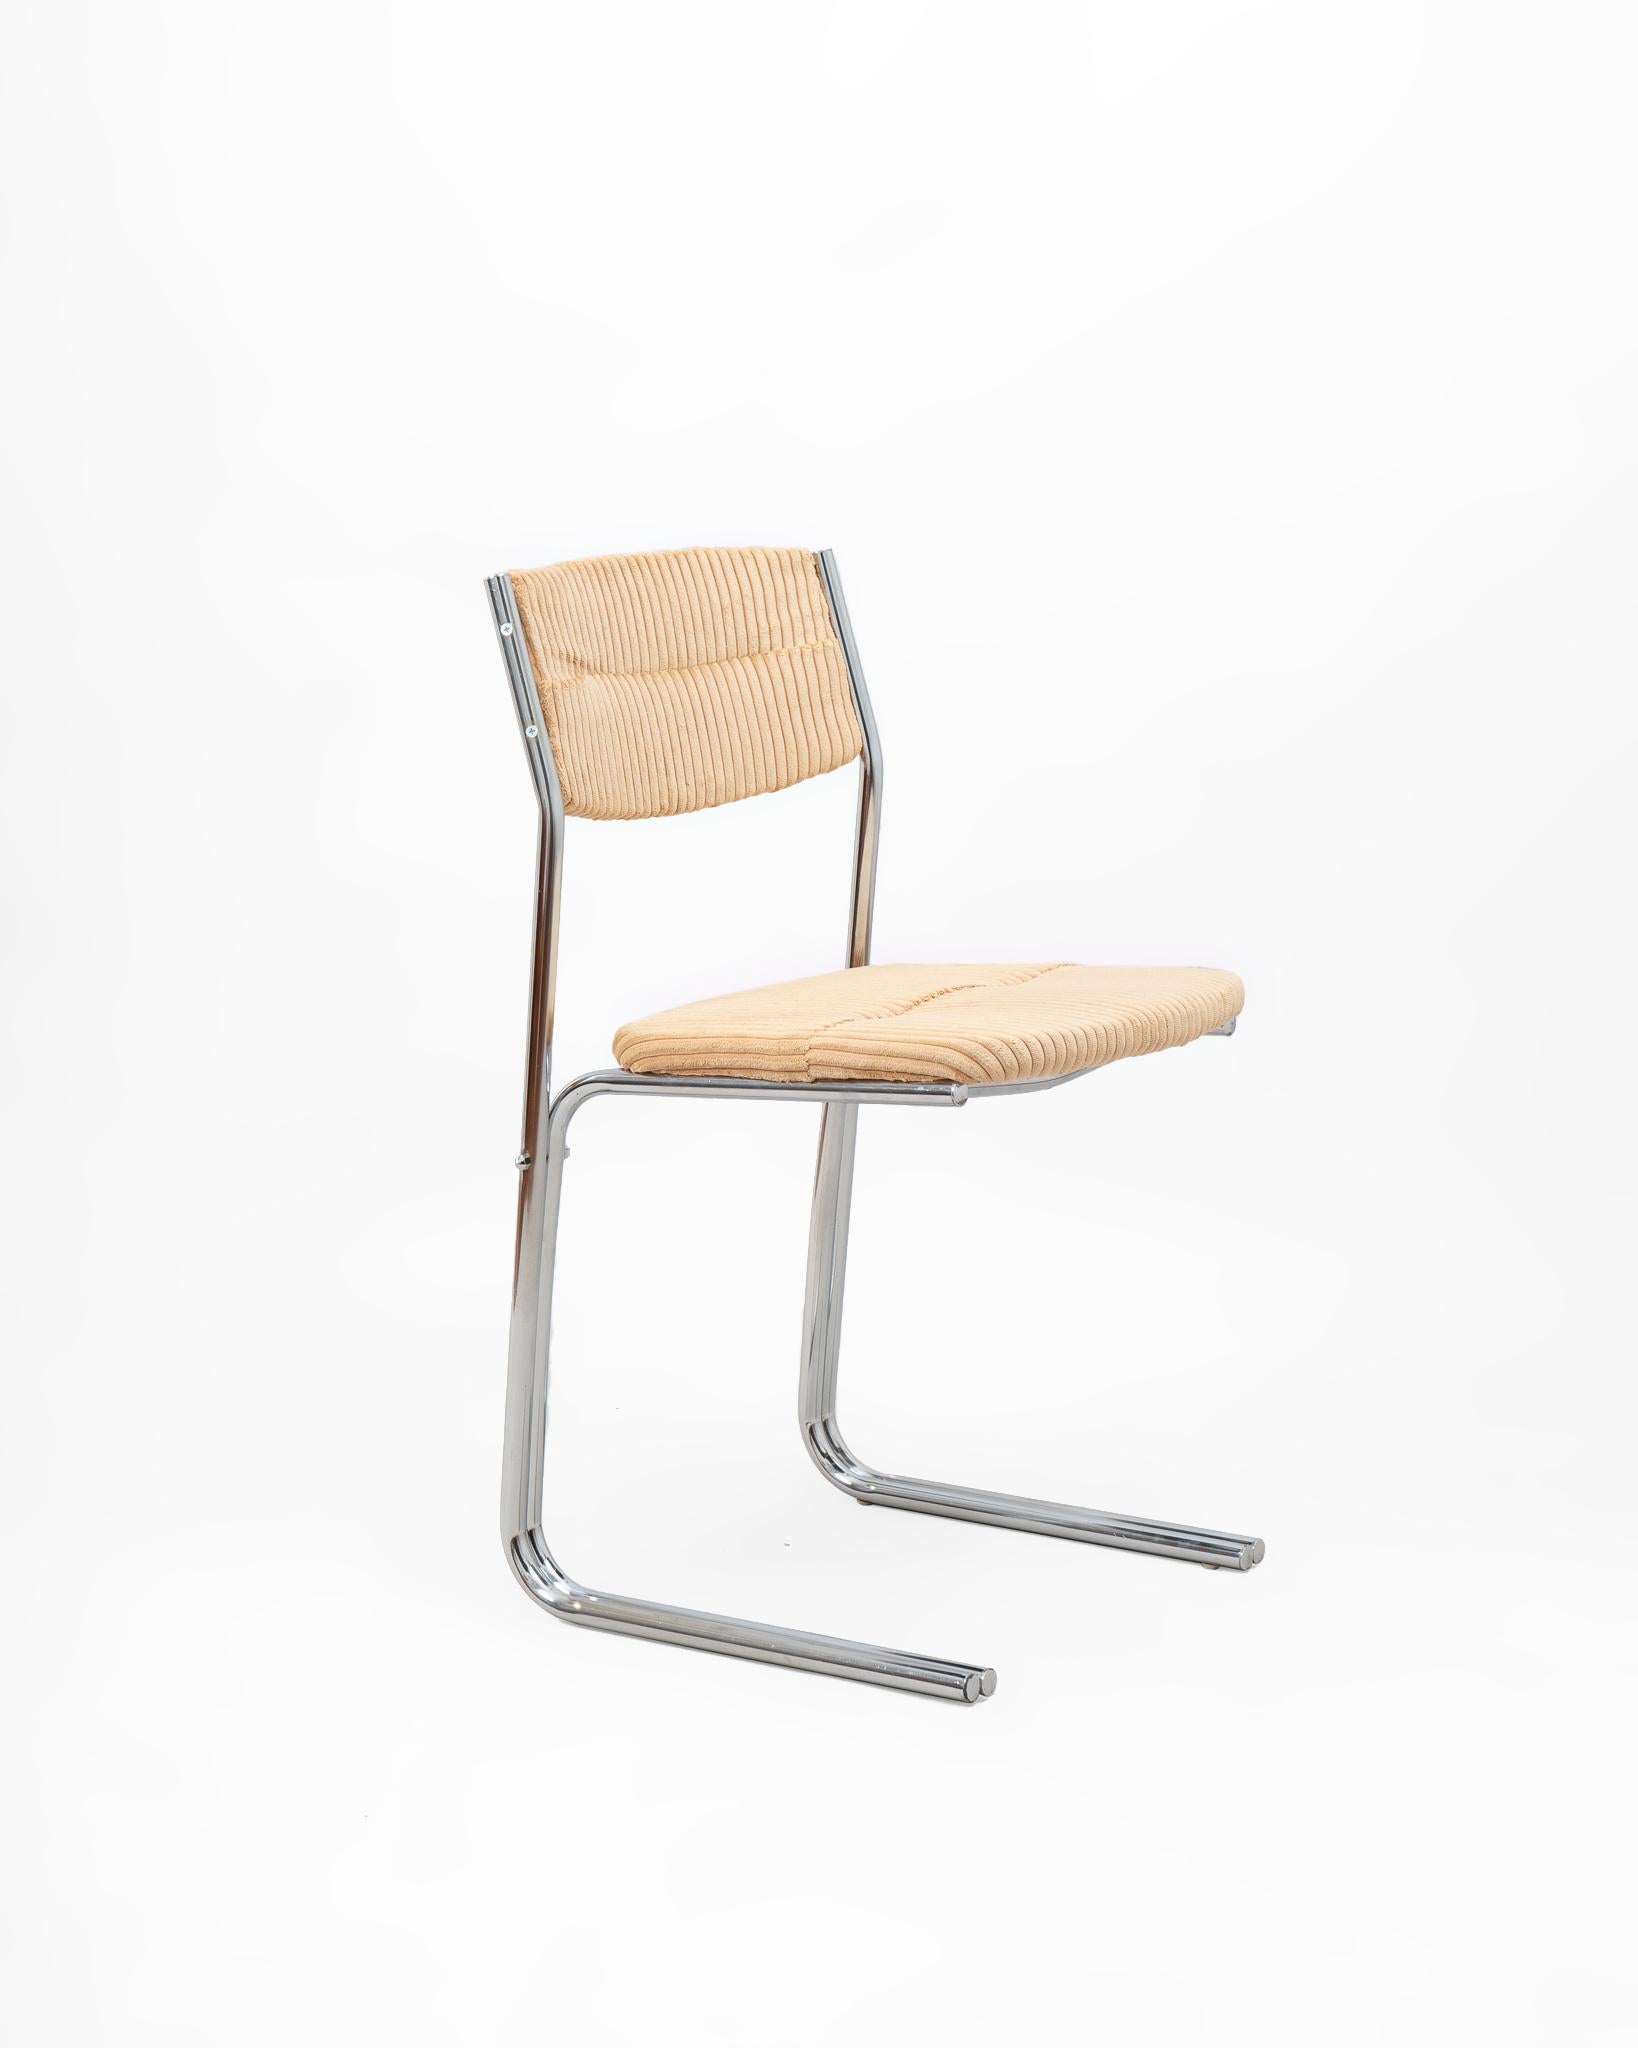 Conjunto de cuatro sillas italianas en acero tubular tapizadas en pana gruesa color beige. Ligeras visualmente a la par que resistentes por la propia naturaleza del material y por su propia construcción. Diseño vintage, de marcado estilo